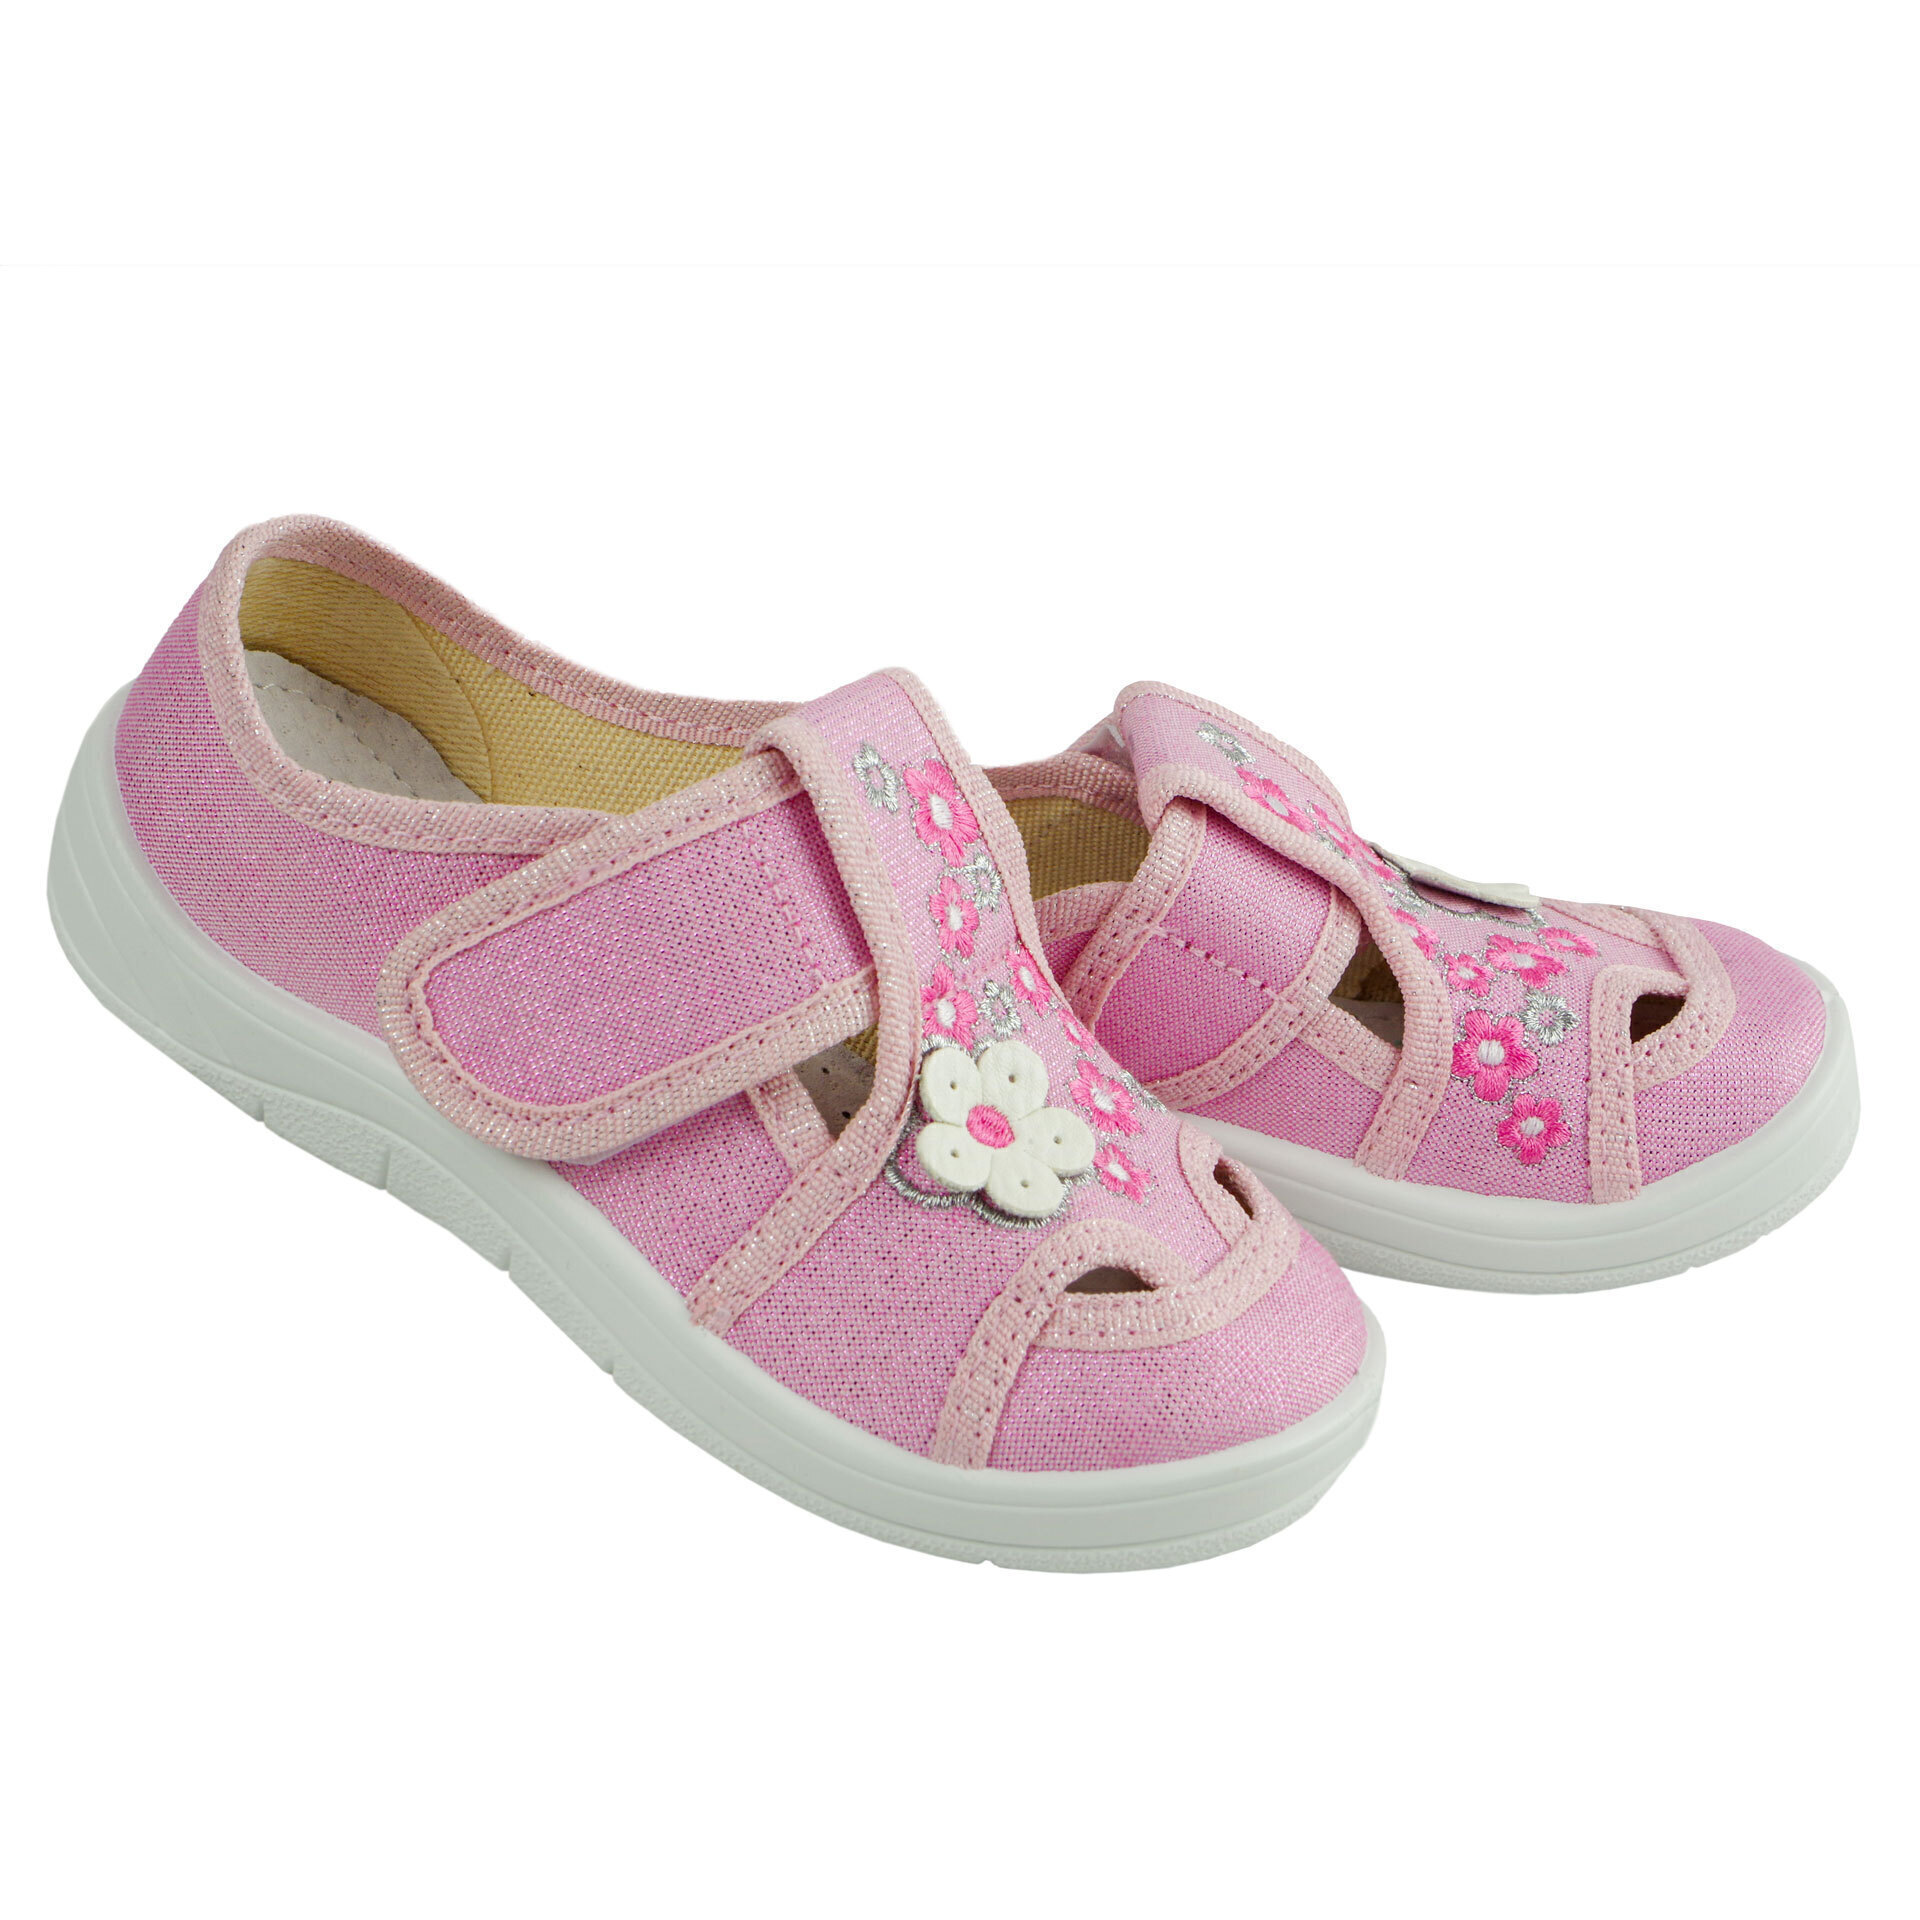 Текстильная обувь для девочек Тапочки Мила (2039) цвет Розовый 24-30 размеры – Sole Kids. Фото 2